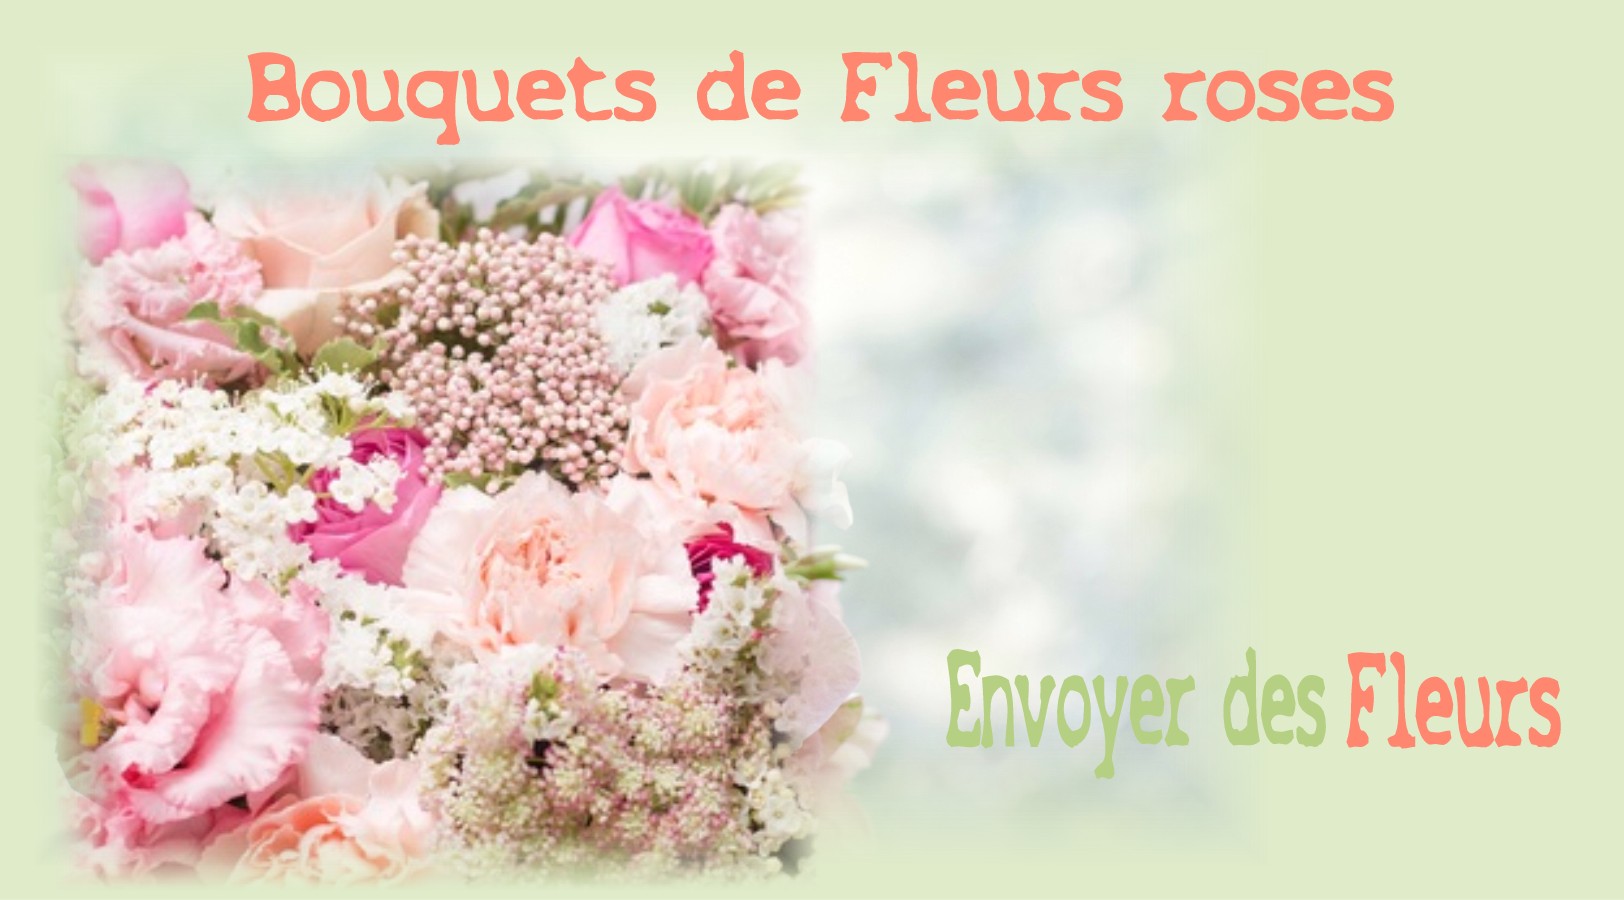 BOUQUETS DE FLEURS ROSES - FLEURISTE MARSEILLE (13) - ENVOYER DES FLEURS